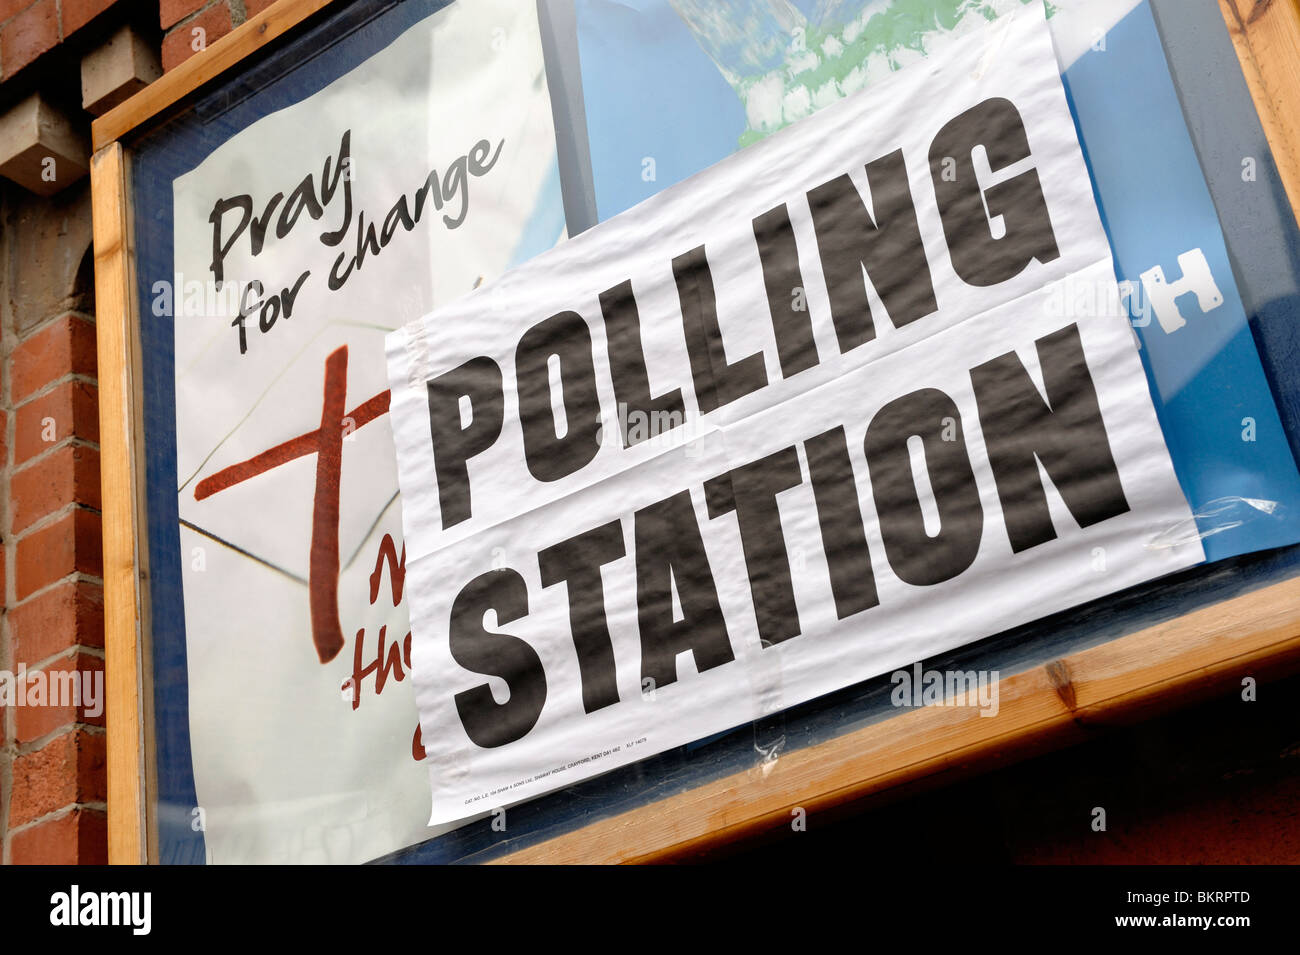 Elezione della stazione di polling Foto Stock